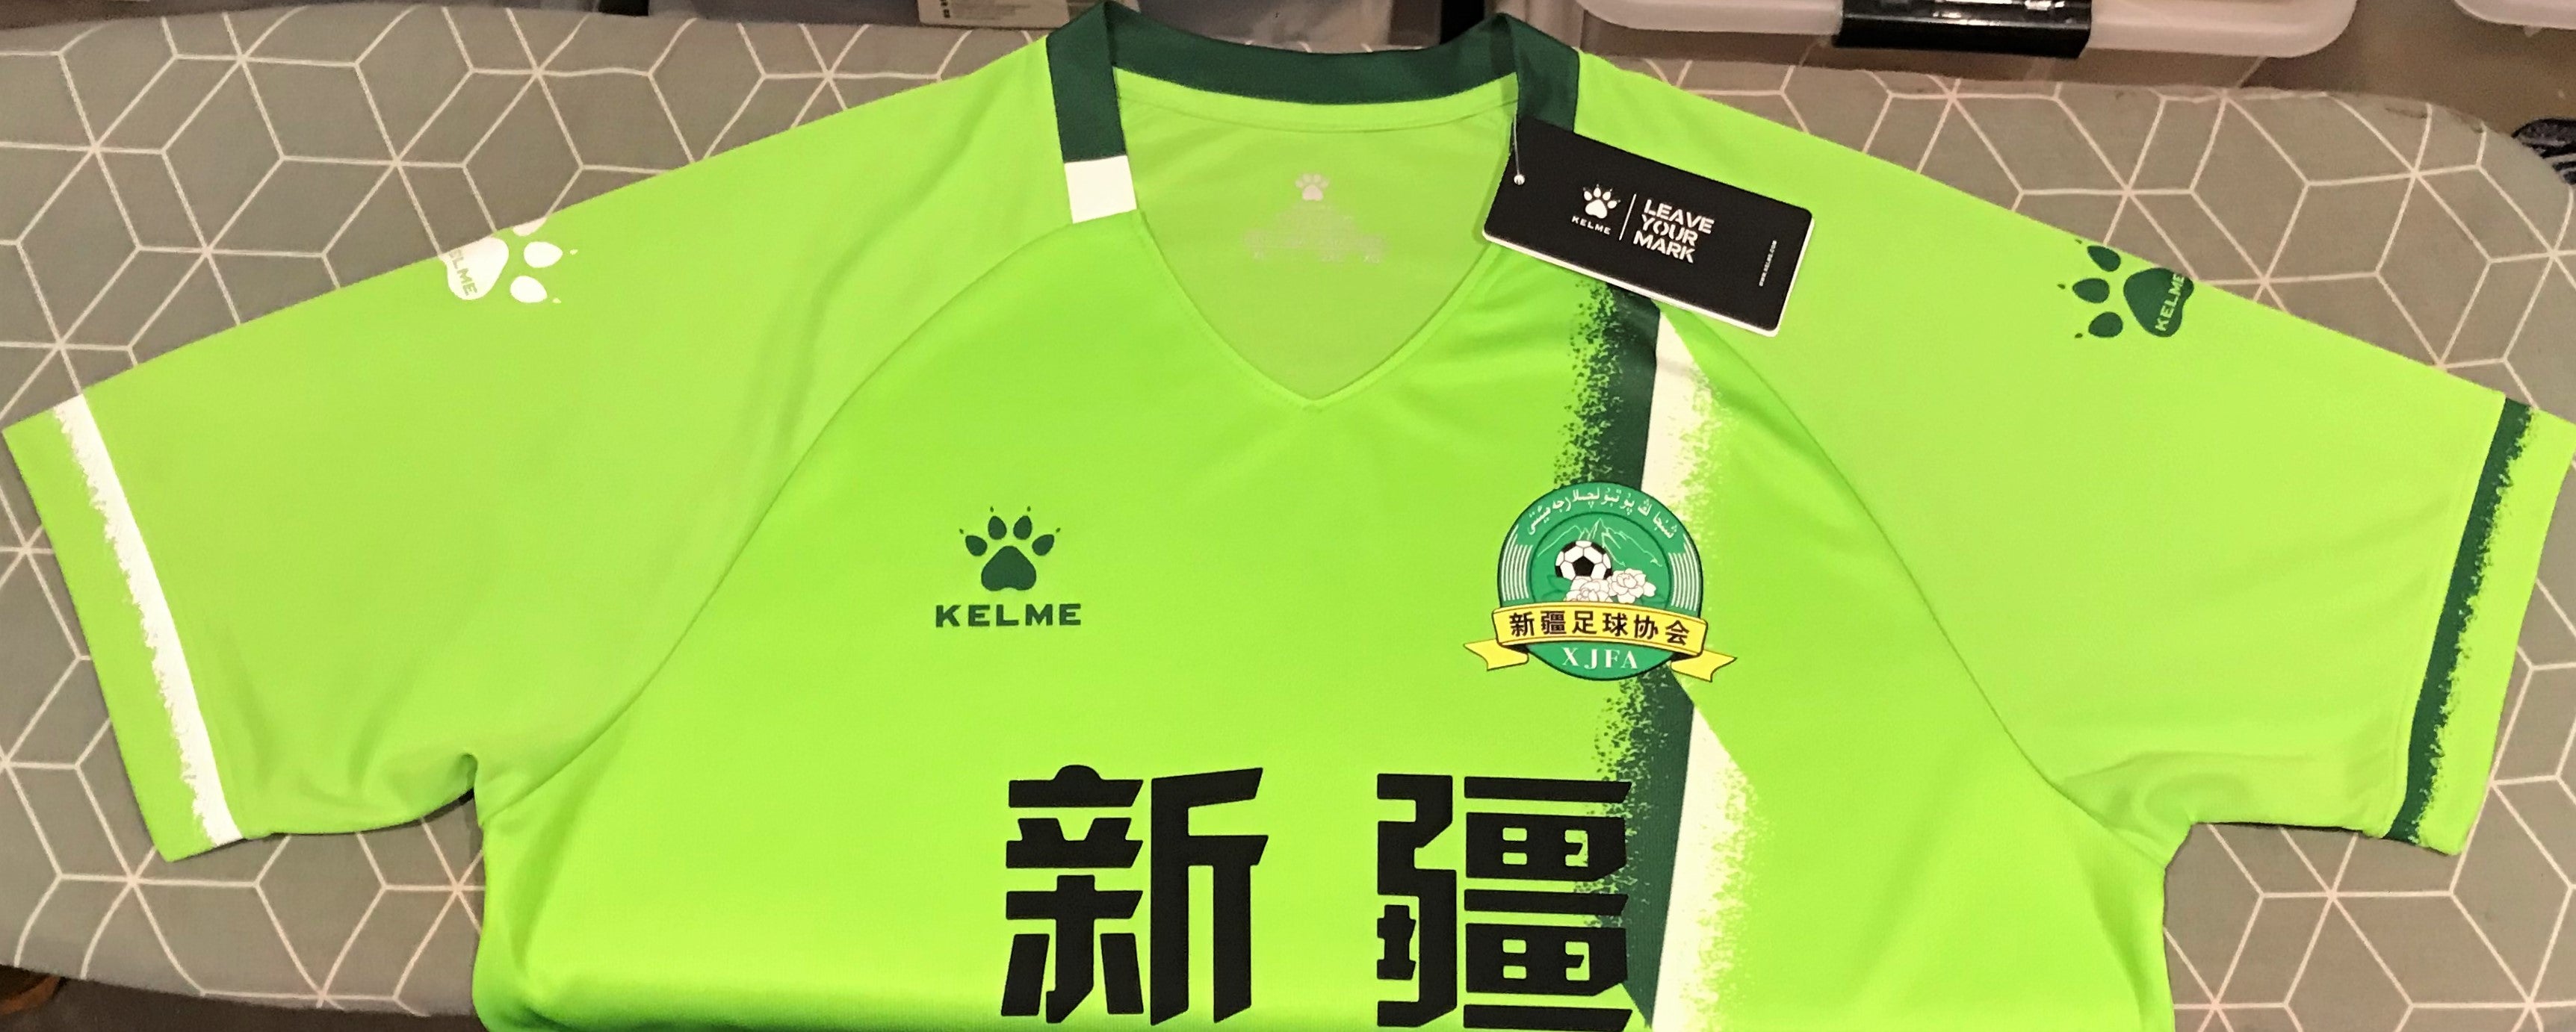 Xinjiang 2021 National Games Home (#10- MUHMET) Jersey/Shirt